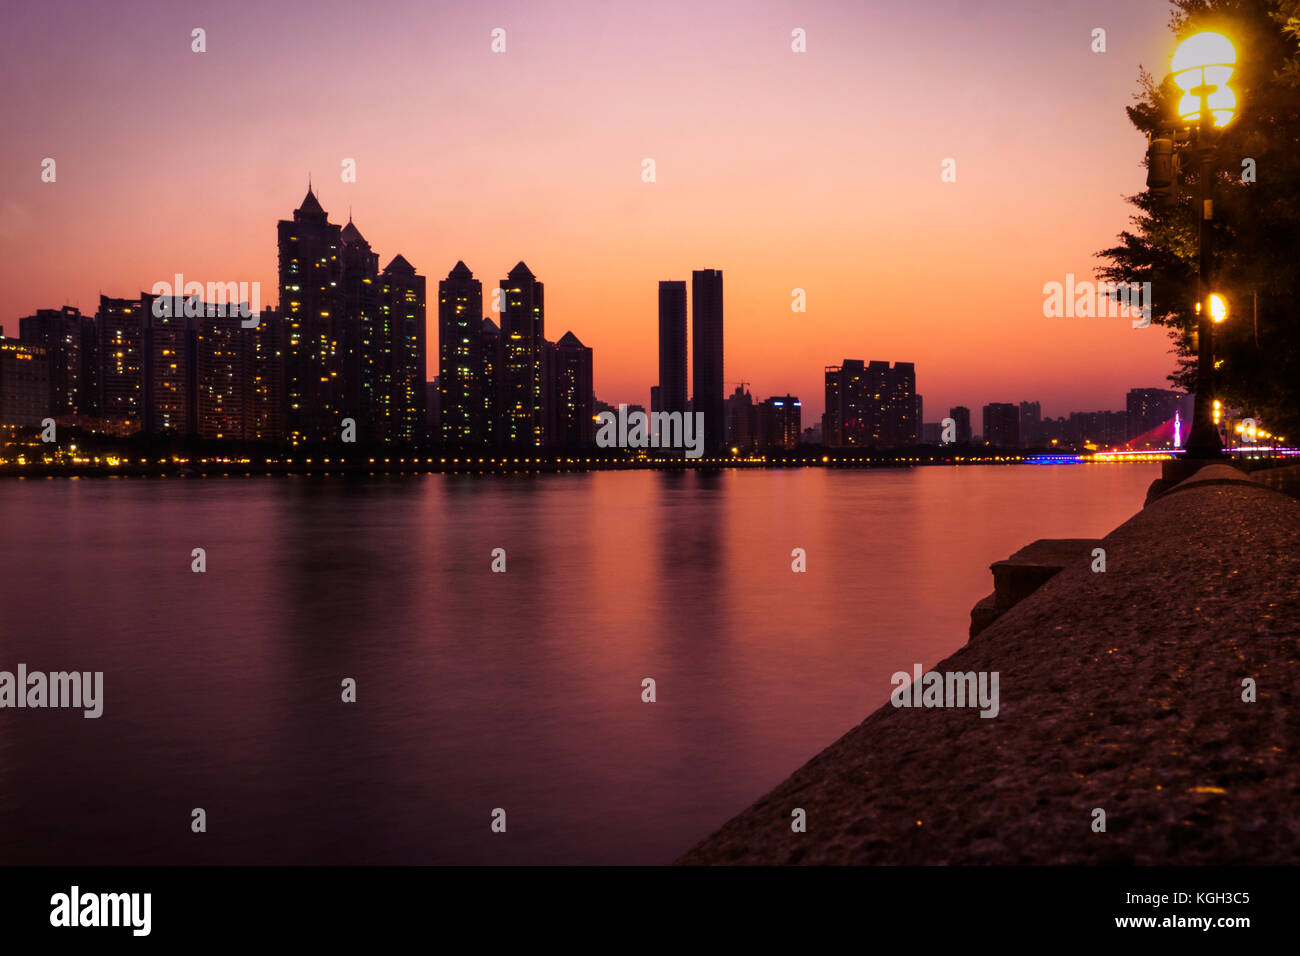 Dämmerung über den Pearl River und die Stadt Guangzhou, der Hauptstadt der Provinz Guangdong. Luxus Apartments sind hell bis in den Hintergrund. Stockfoto